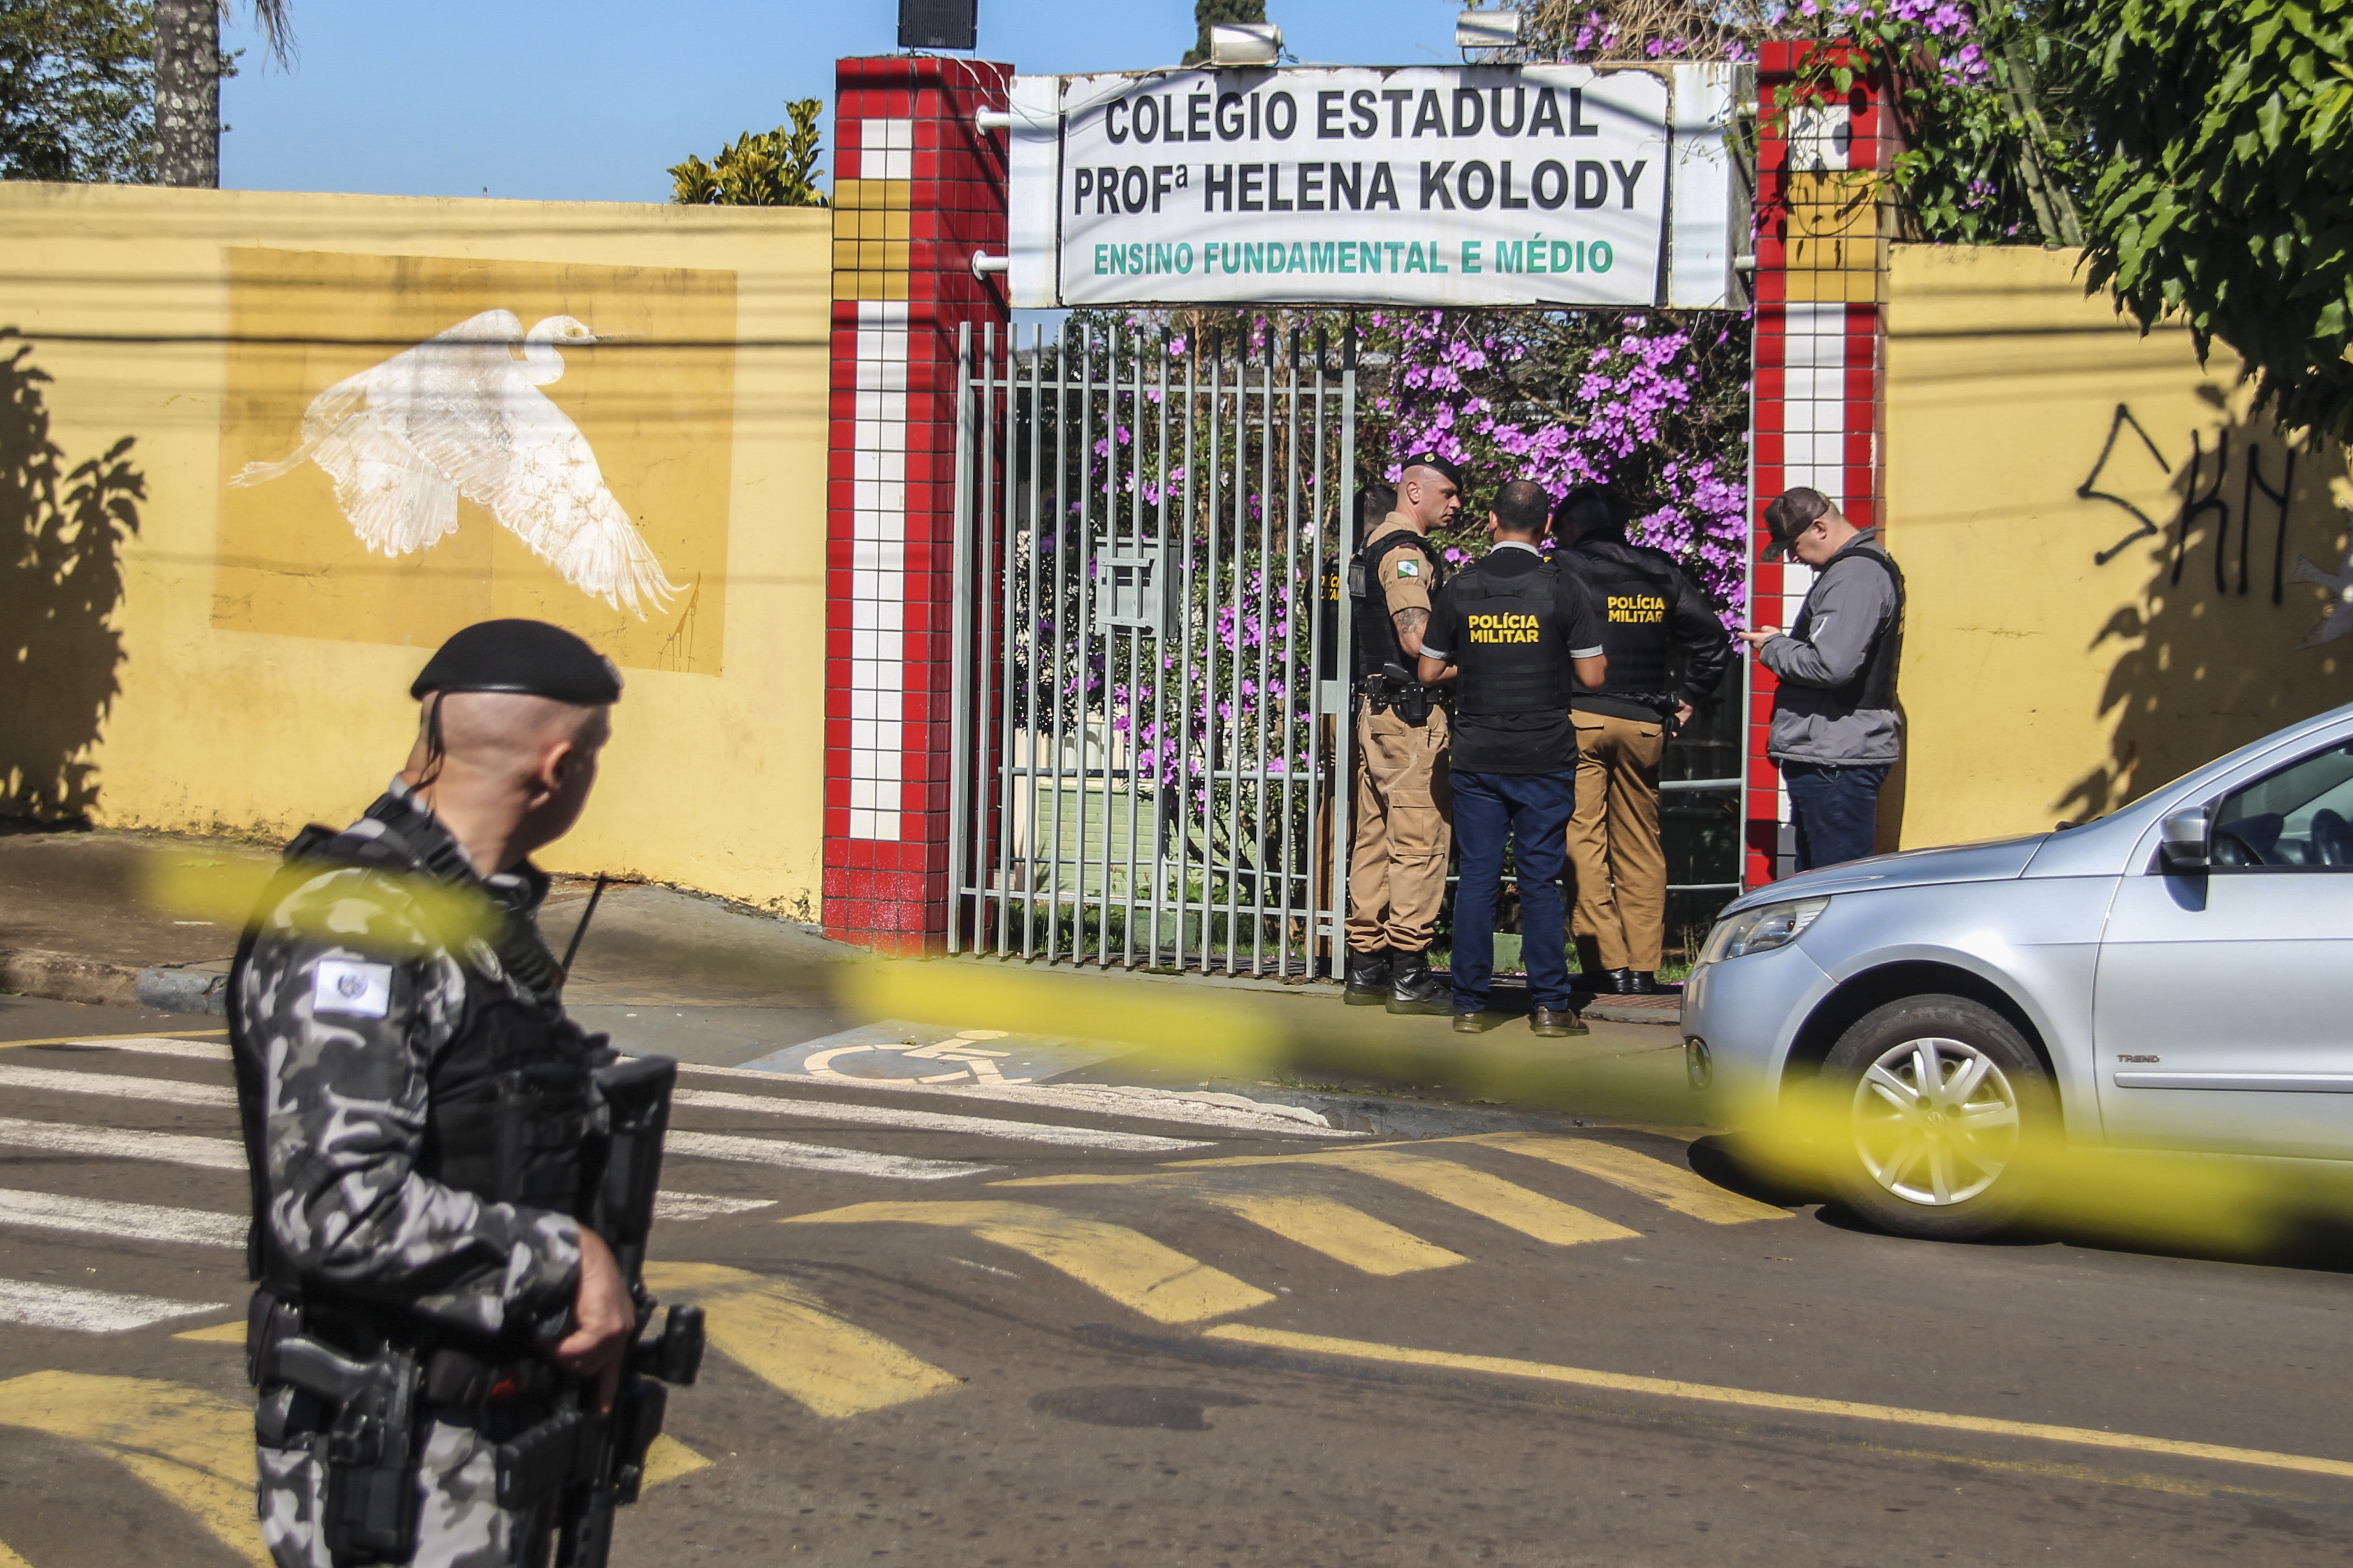 Colégio Estadual Professora Helena Kolody, no Paraná, foi alvo de ataque a tiros na manhã desta segunda-feira (19) - Foto: Filipe Barbosa/EFE